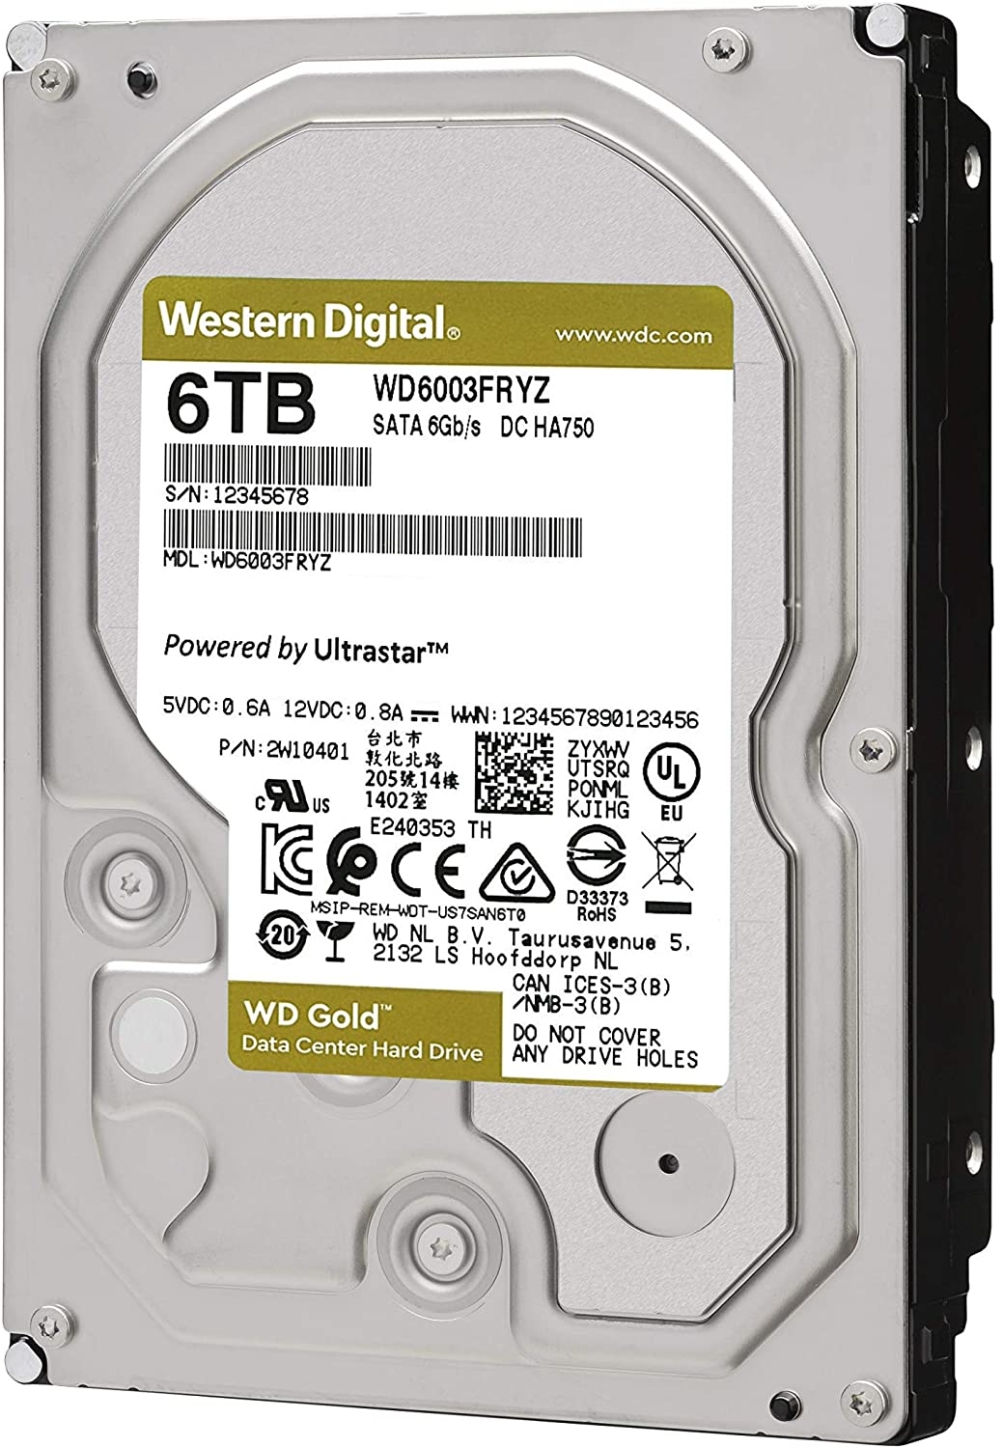 tvard-disk-western-digital-gold-datacenter-hdd-6-t-western-digital-wd6003fryz